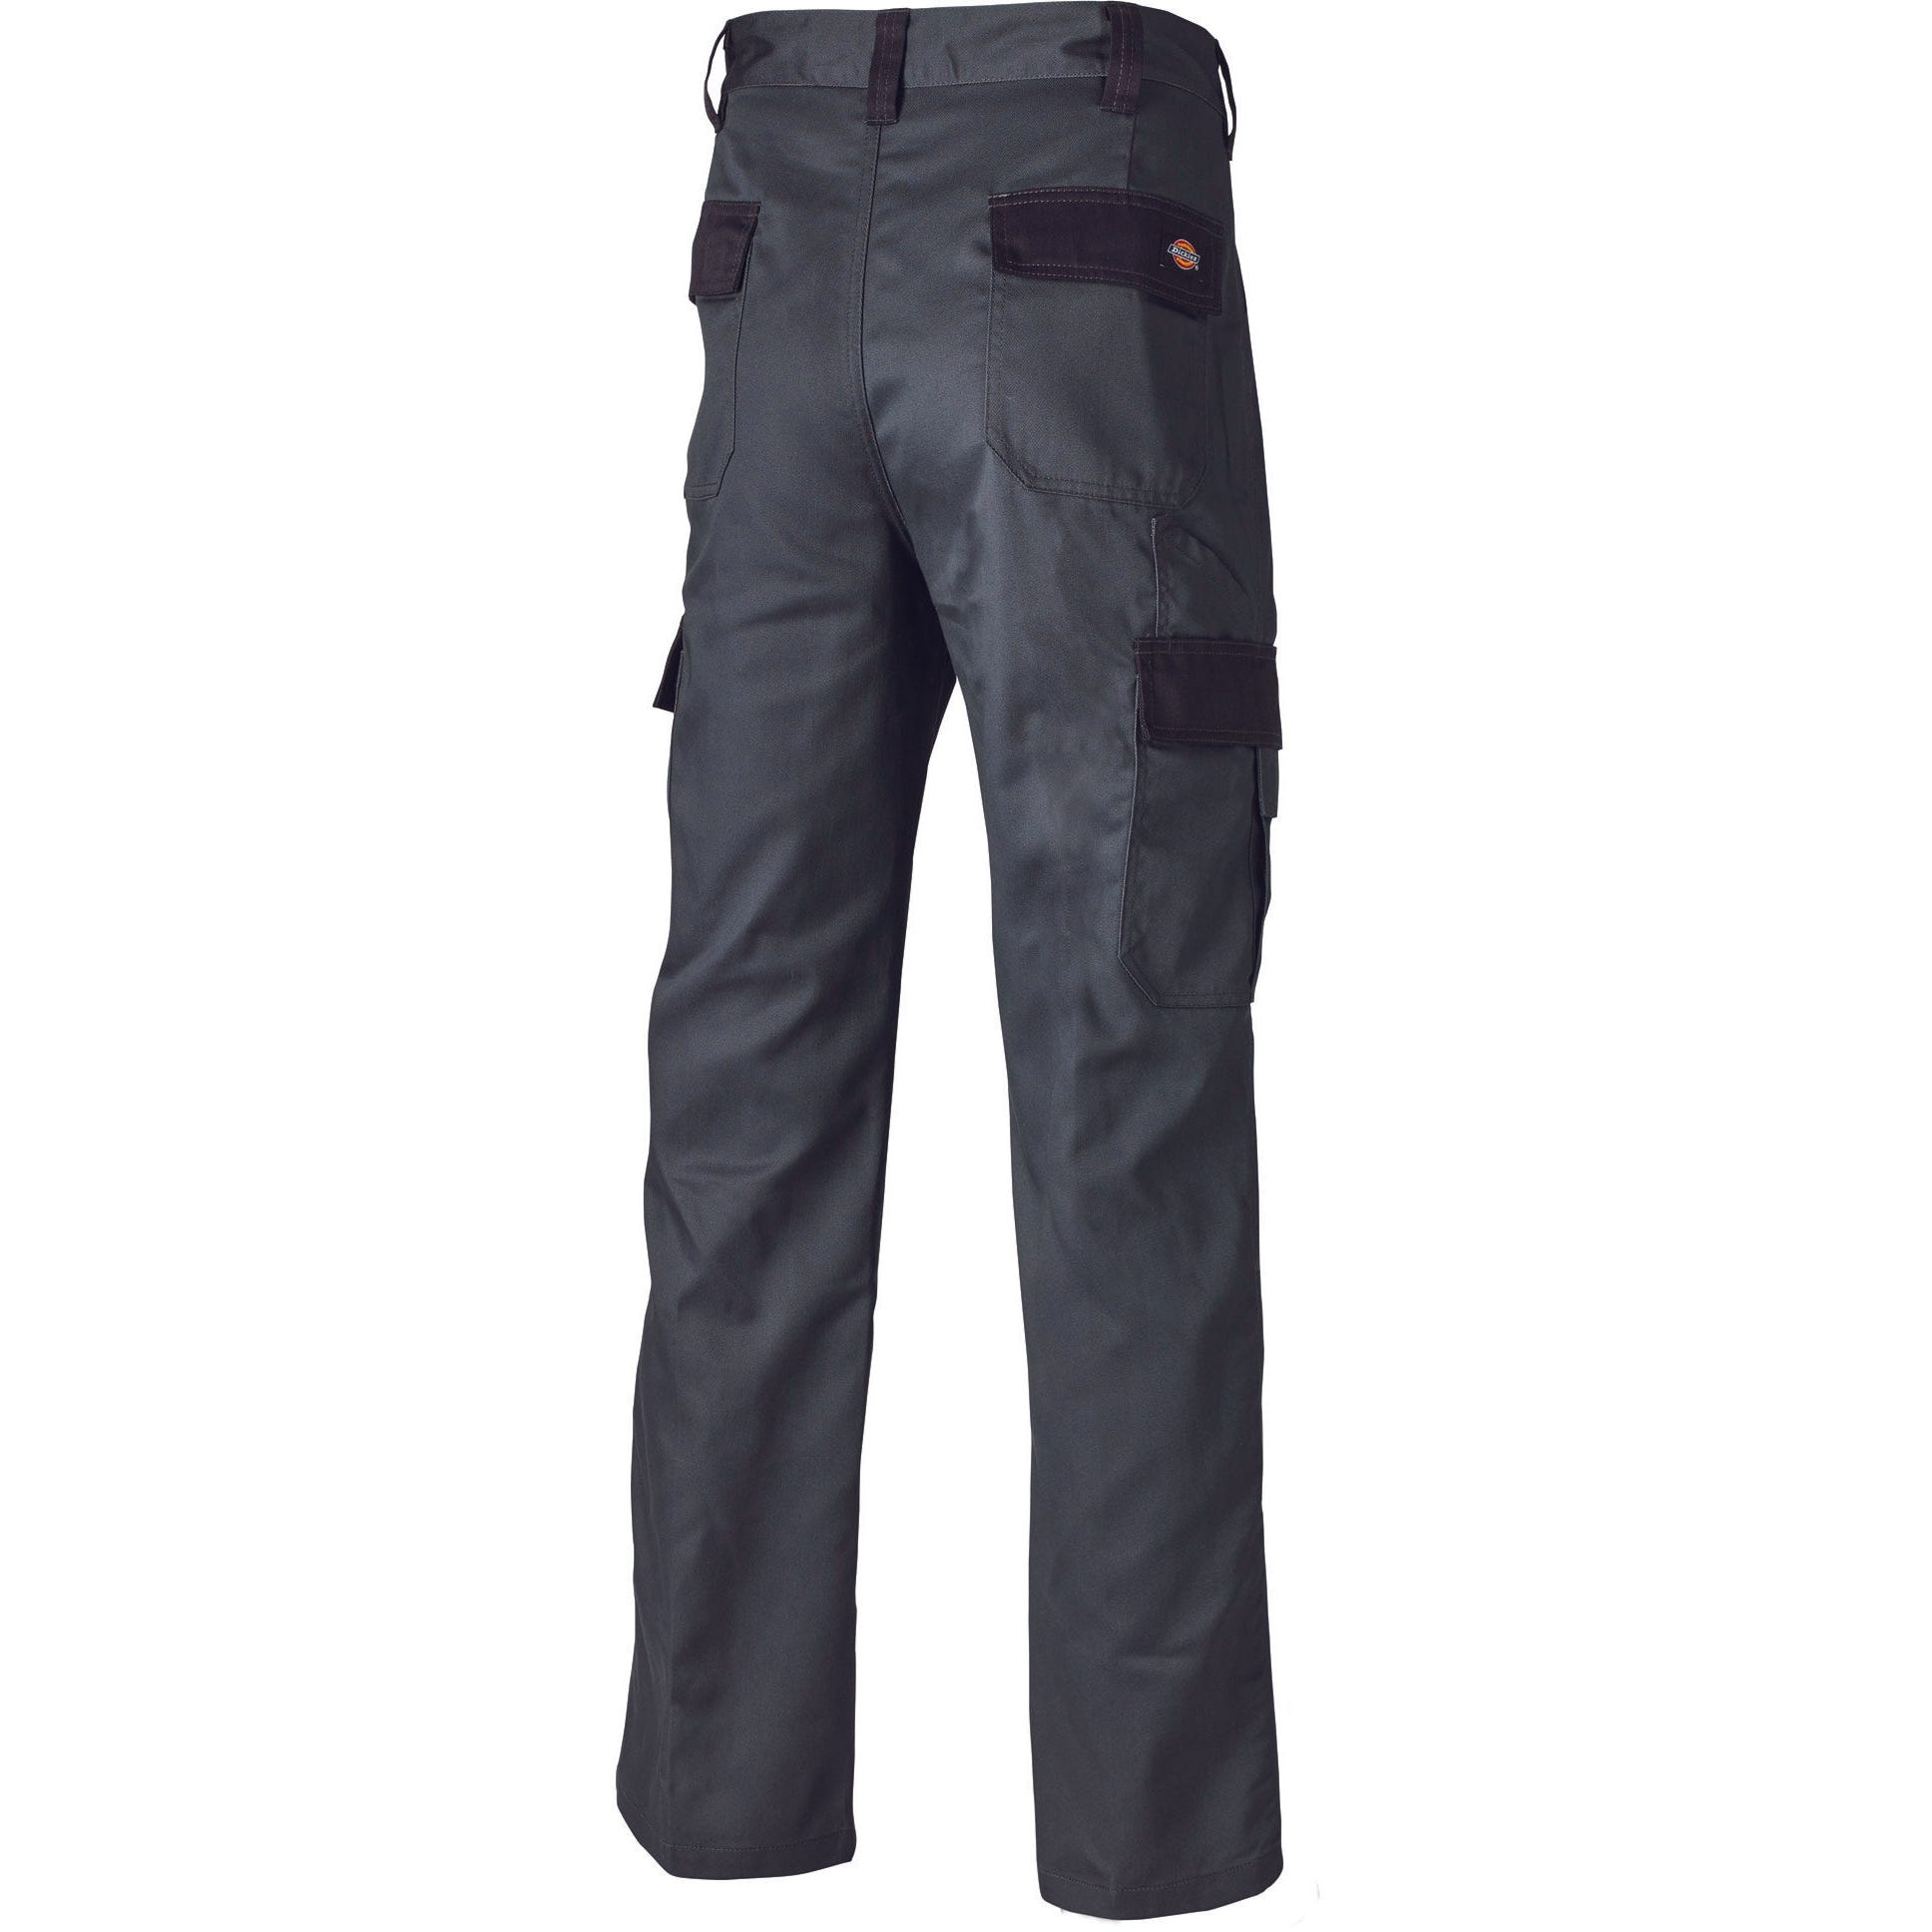 Pantalon Everyday Gris et noir- Dickies - Taille 40 6